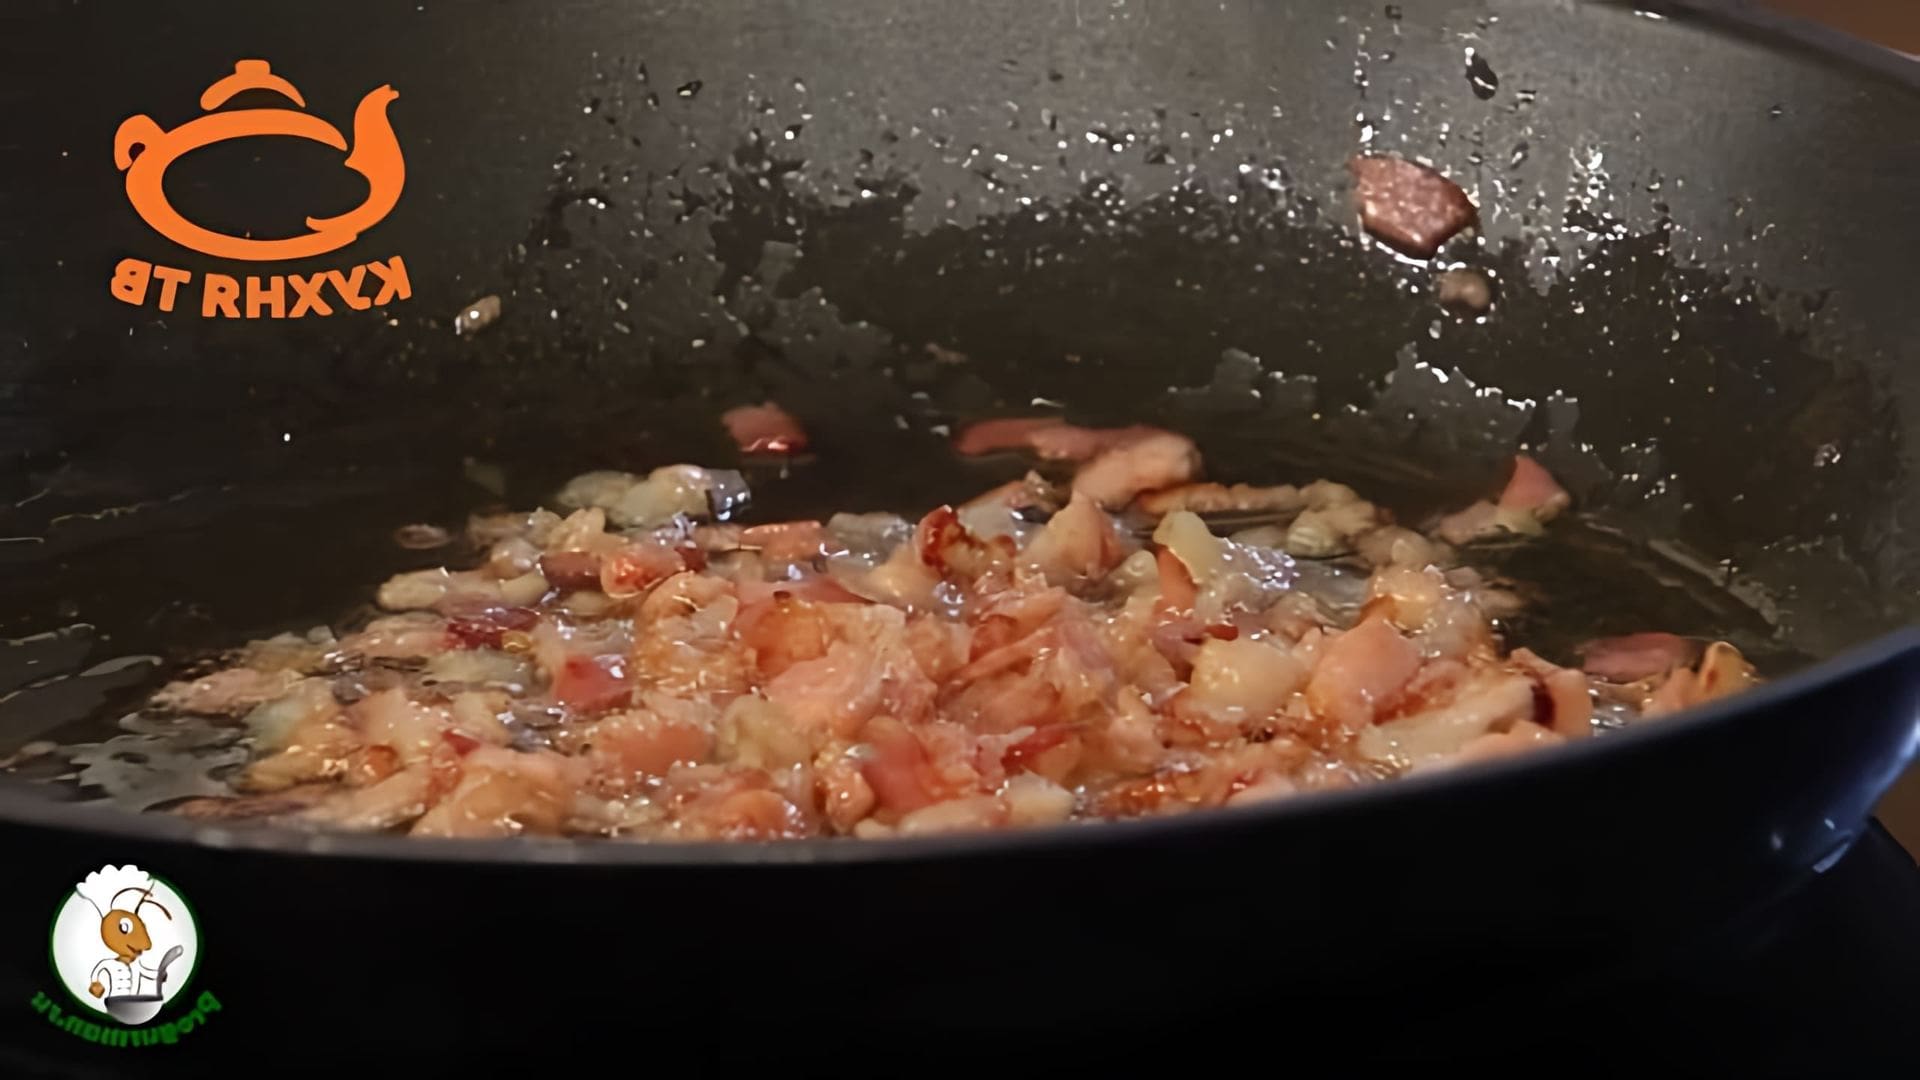 В этом видео Константин Ивлев, известный шеф-повар и ресторатор, готовит лосось в сувид (sousvide salmon) с паназиатским соусом и пюре из копченого горошка